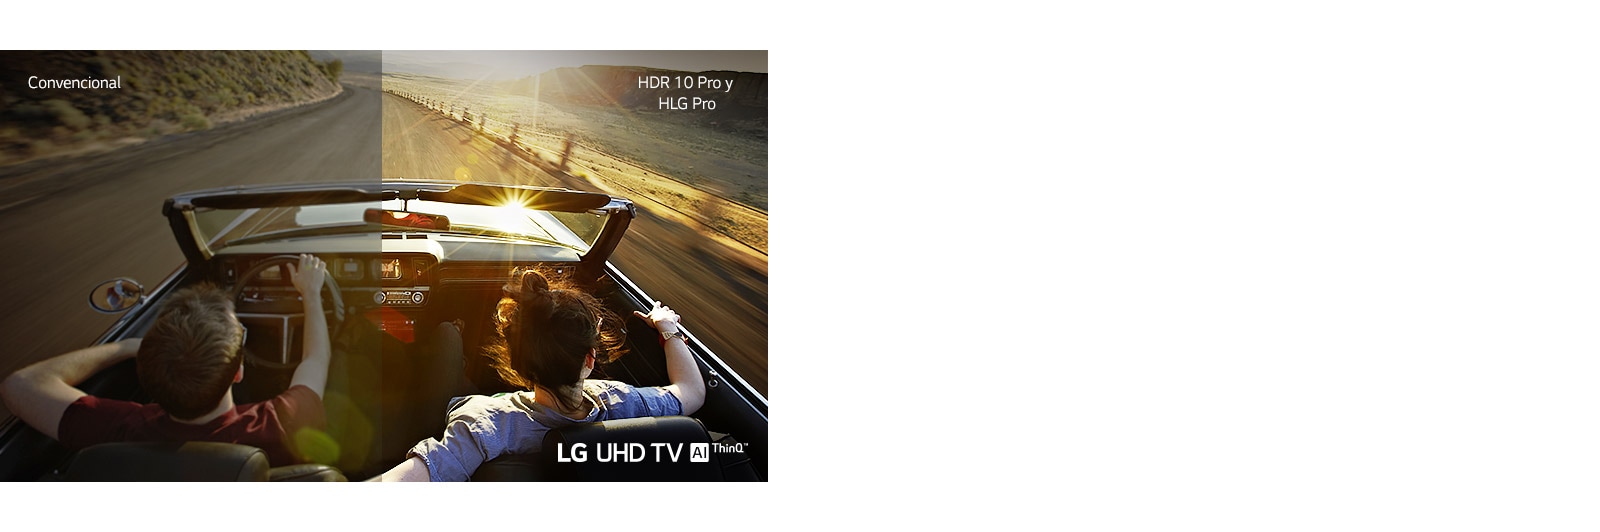 Una pareja en un coche conducen carretera abajo. La mitad se muestra en una pantalla convencional con calidad de imagen pobre. La otra mitad se muestra con la calidad de imagen nítida y vívida del LG UHD TV.